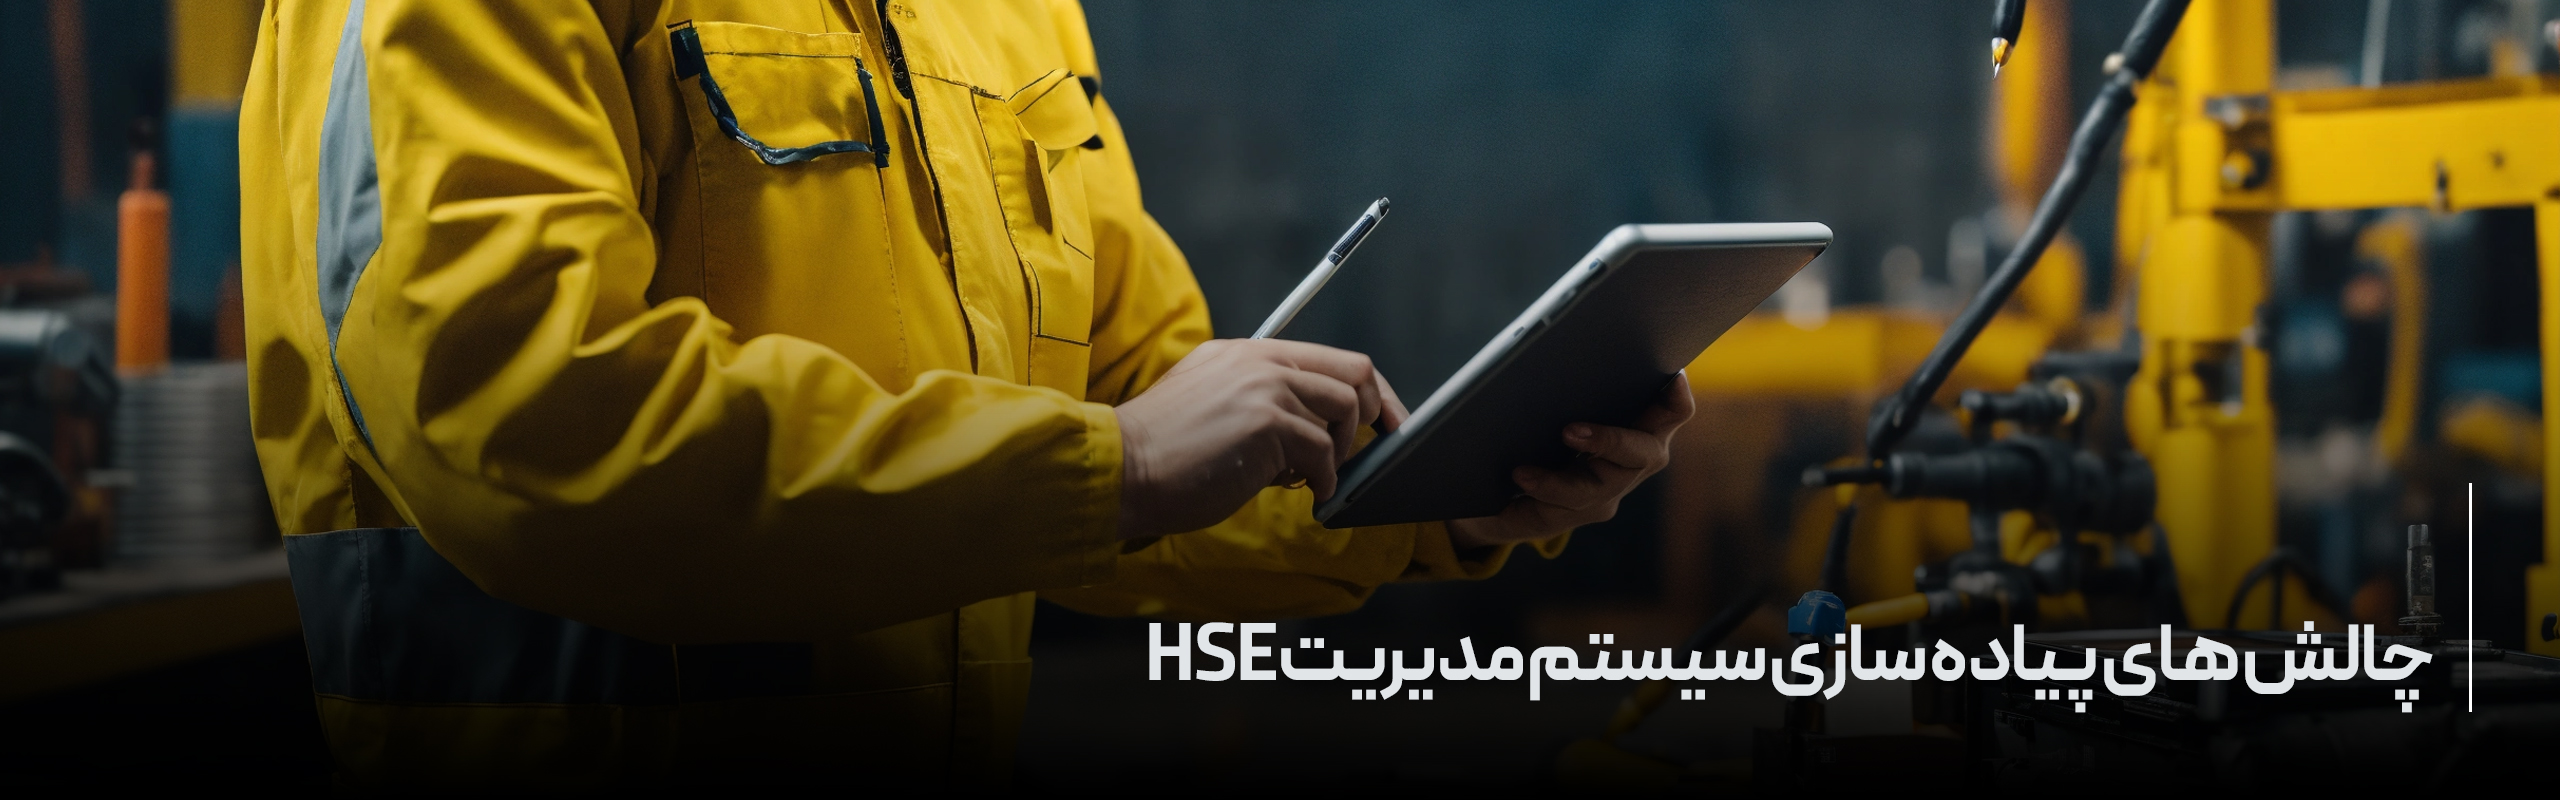 چالش های پیاده سازی سیستم مدیریت HSE